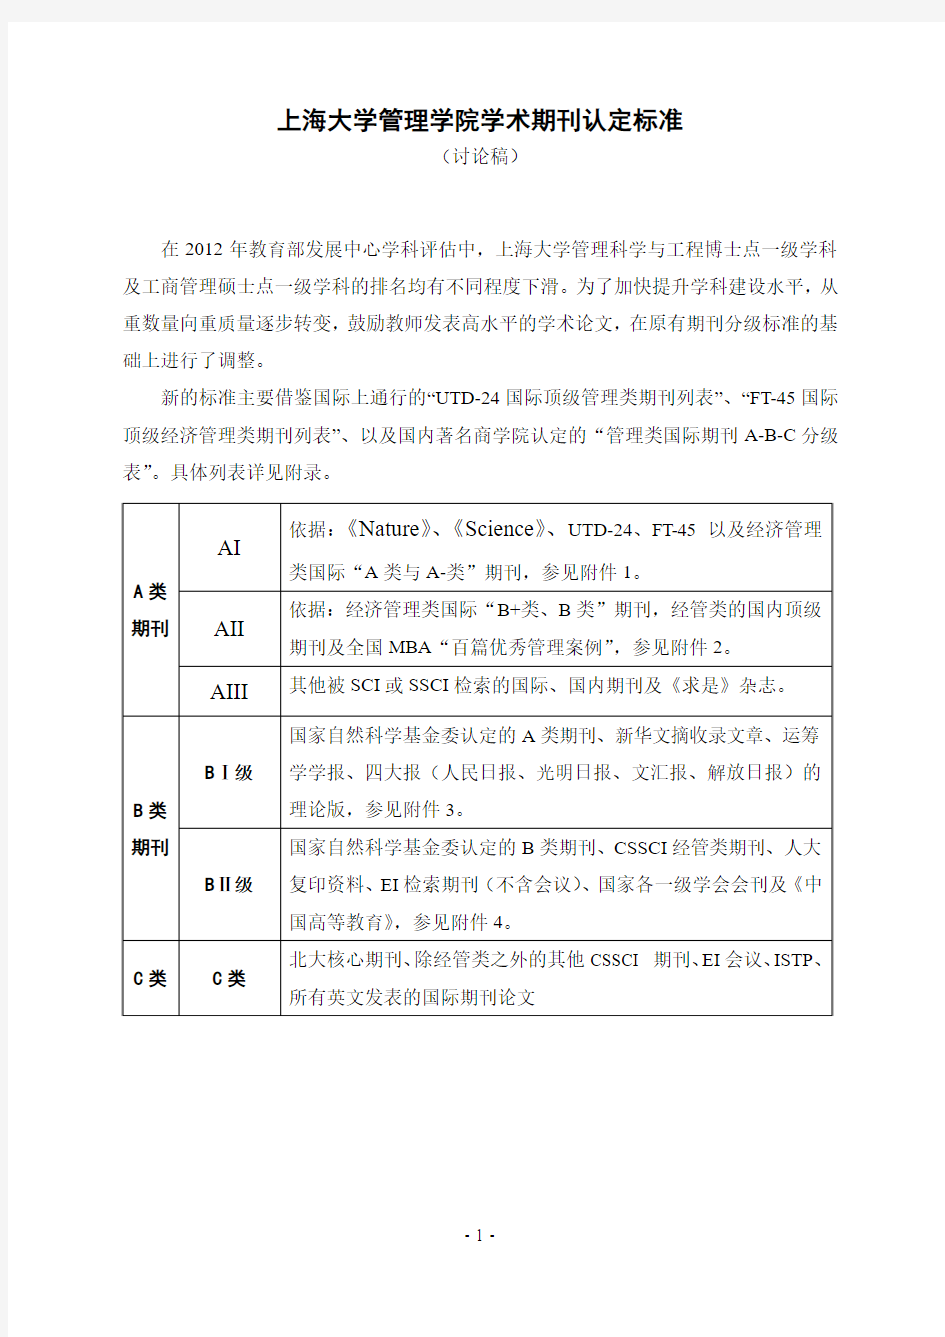 上海大学管理学院学术期刊认定标准(讨论稿)